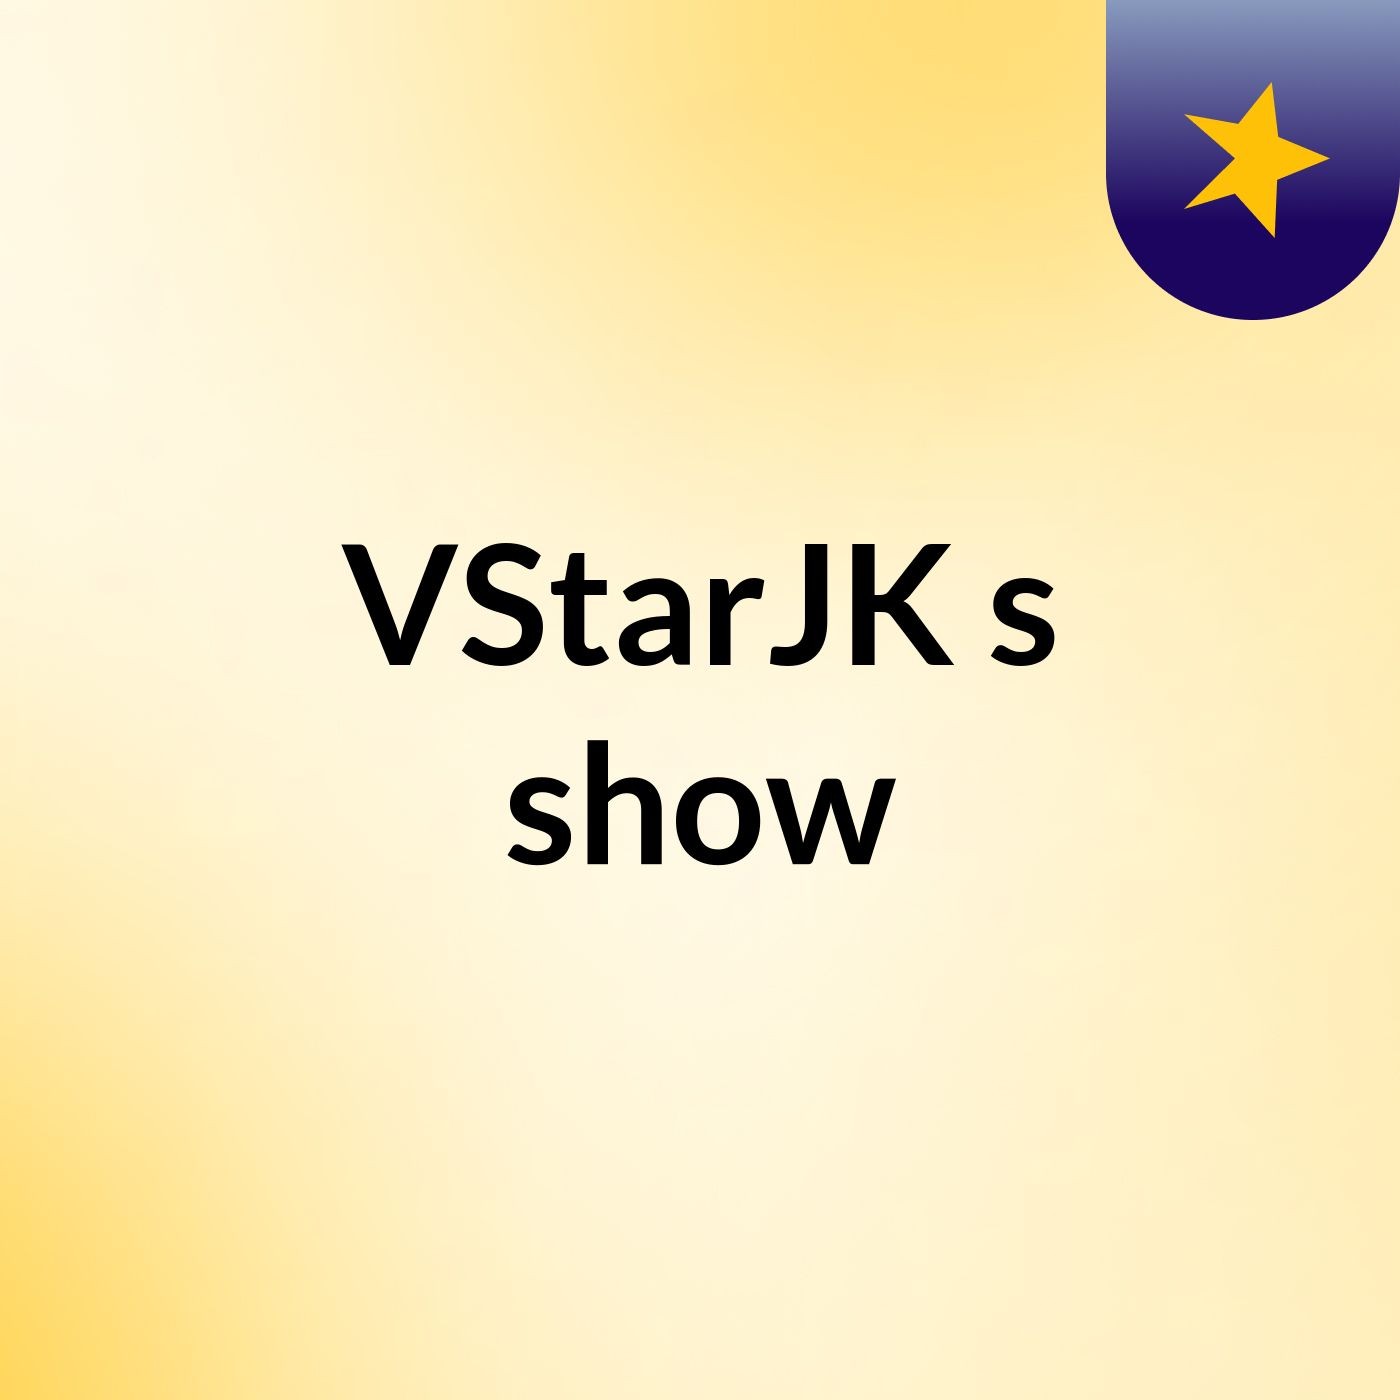 VStarJK's show